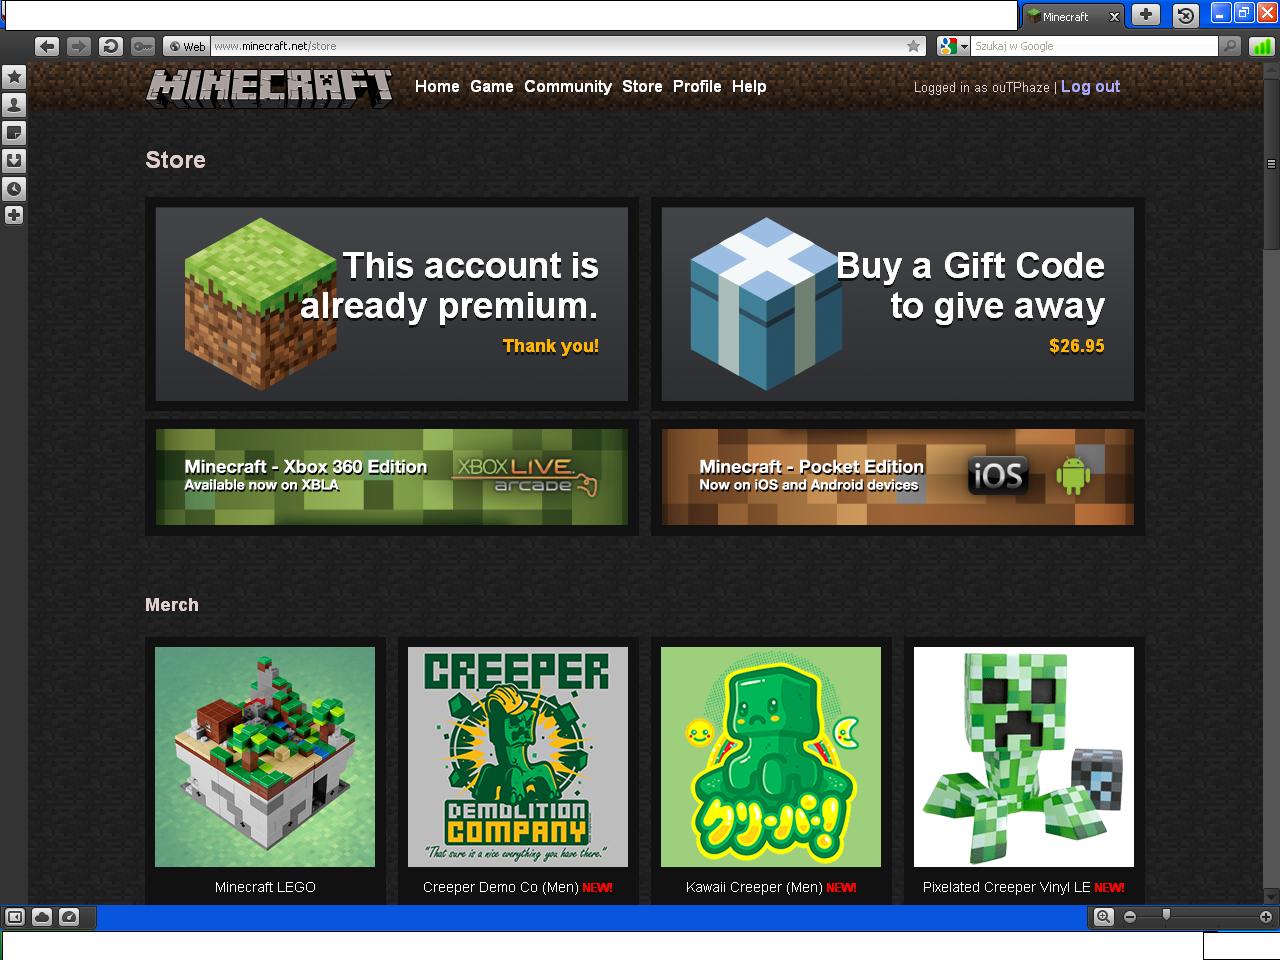 Minecraft - Premium Account DOWNLOAD | HacksDownload